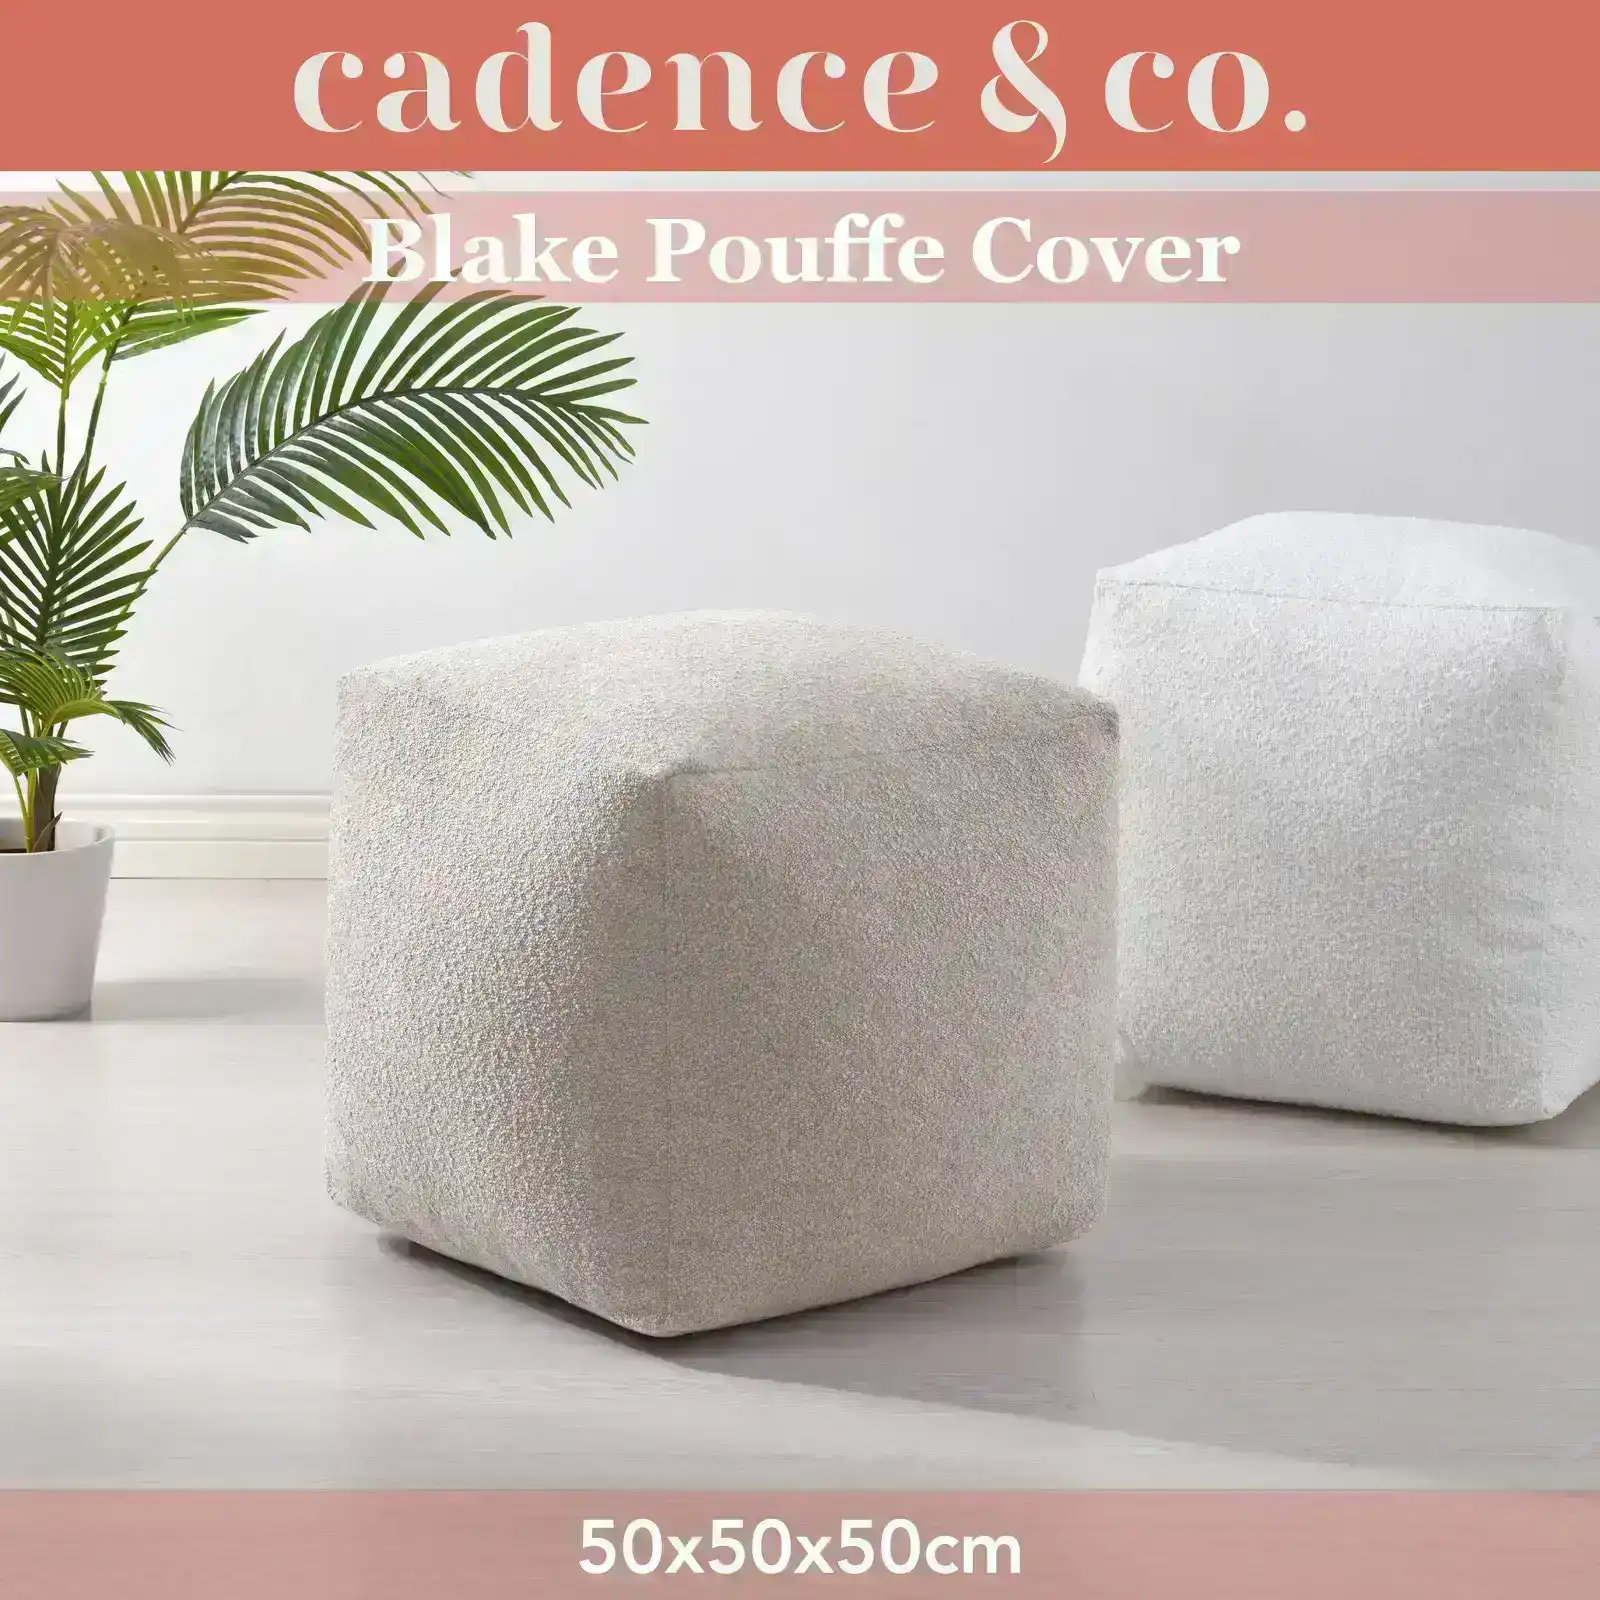 Cadence & Co. Blake Pouffe Cover Parchment 50x50x50cm